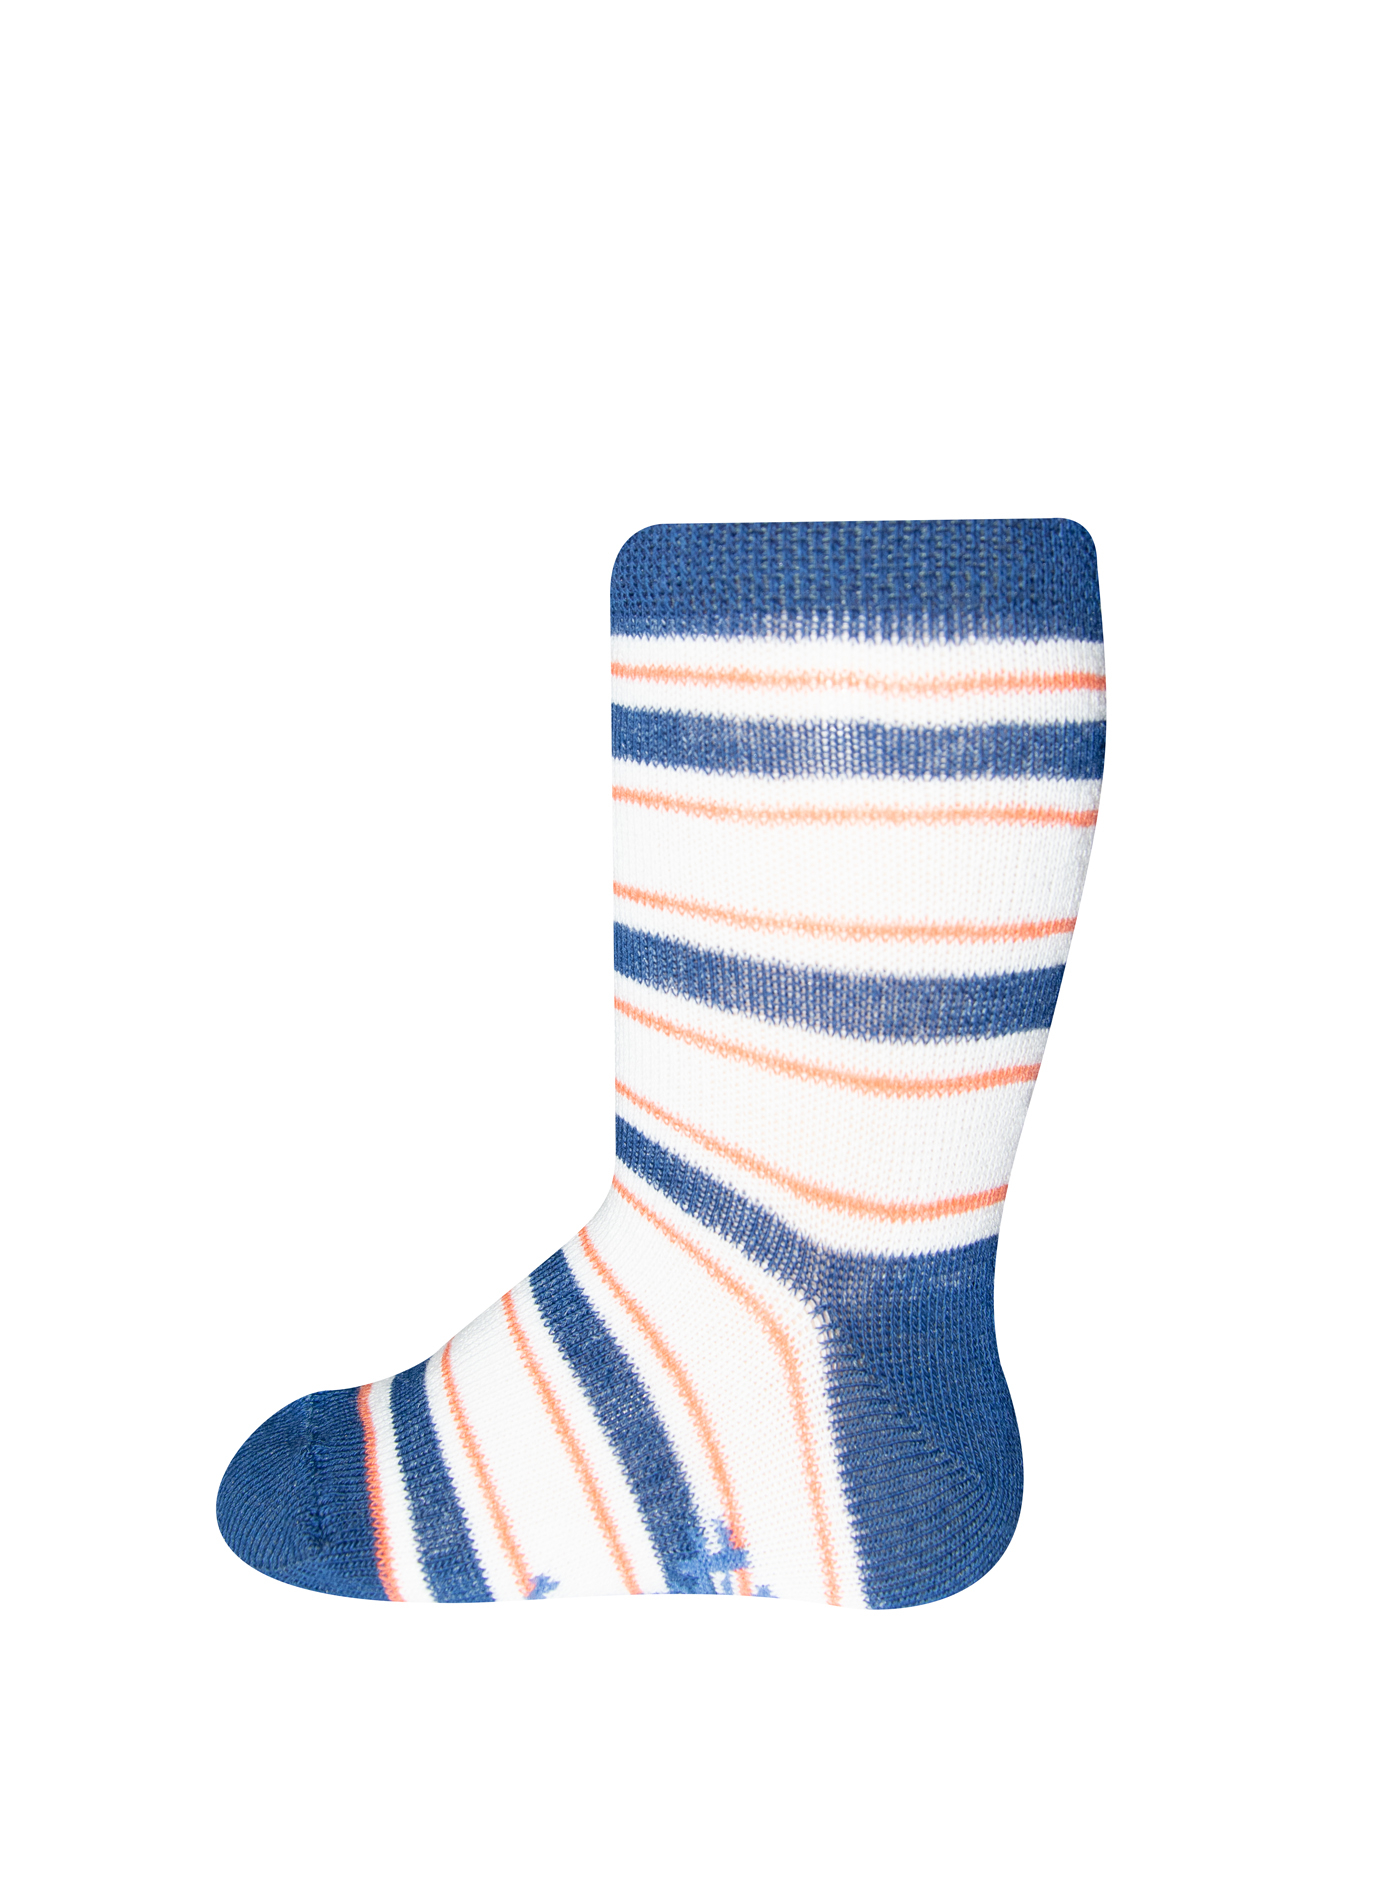 Jungen-Socken (Doppelpack) Blau und Blau-geringelt